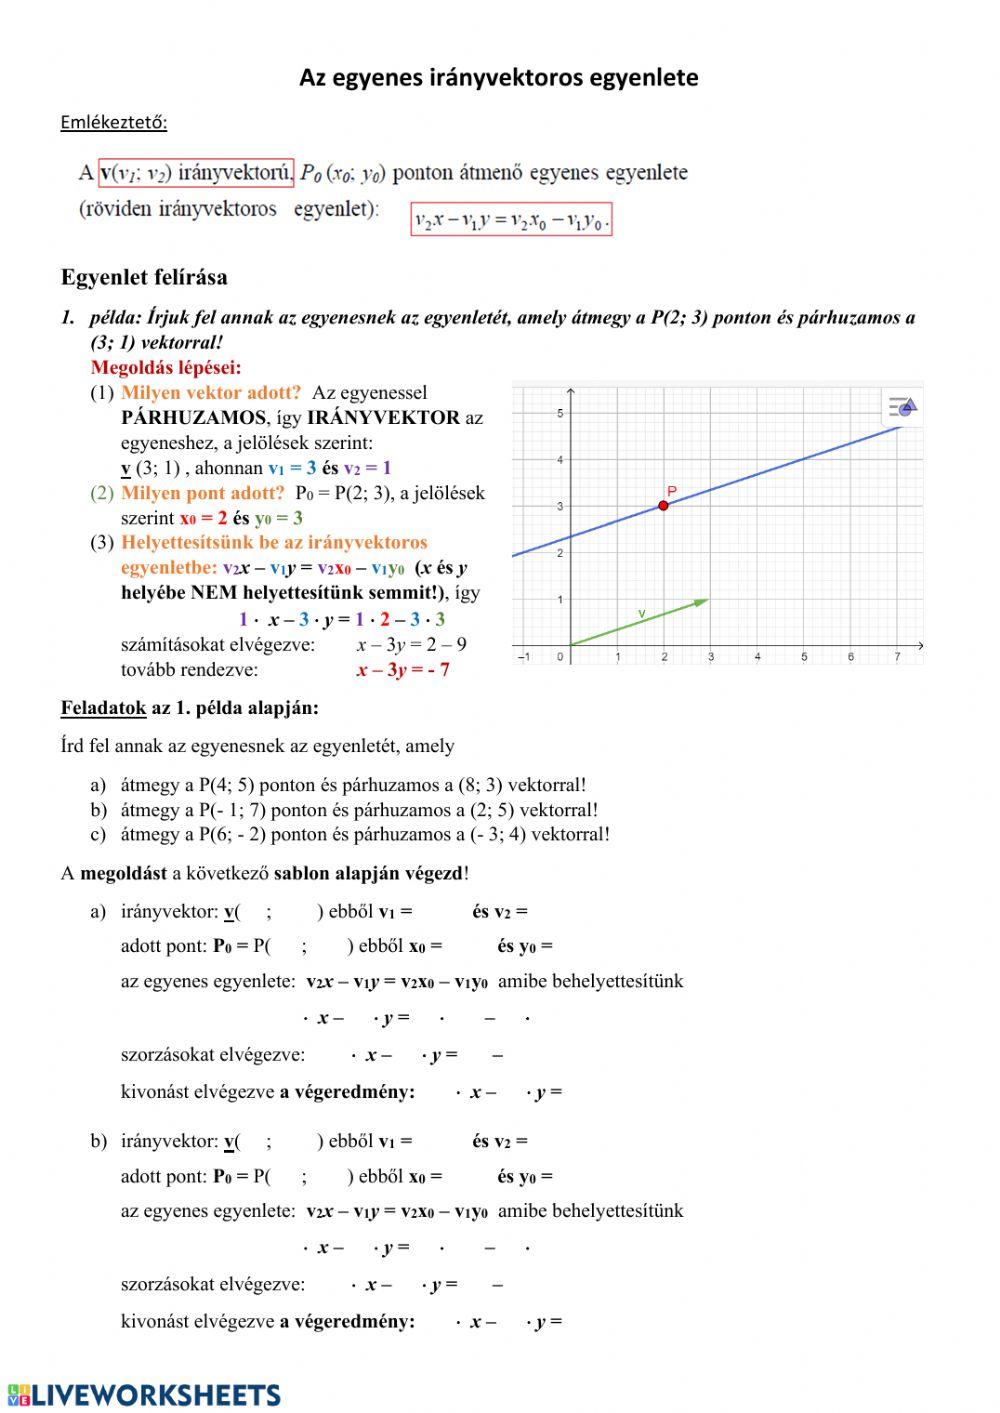 Egyenes irányvektoros egyenlete (1)